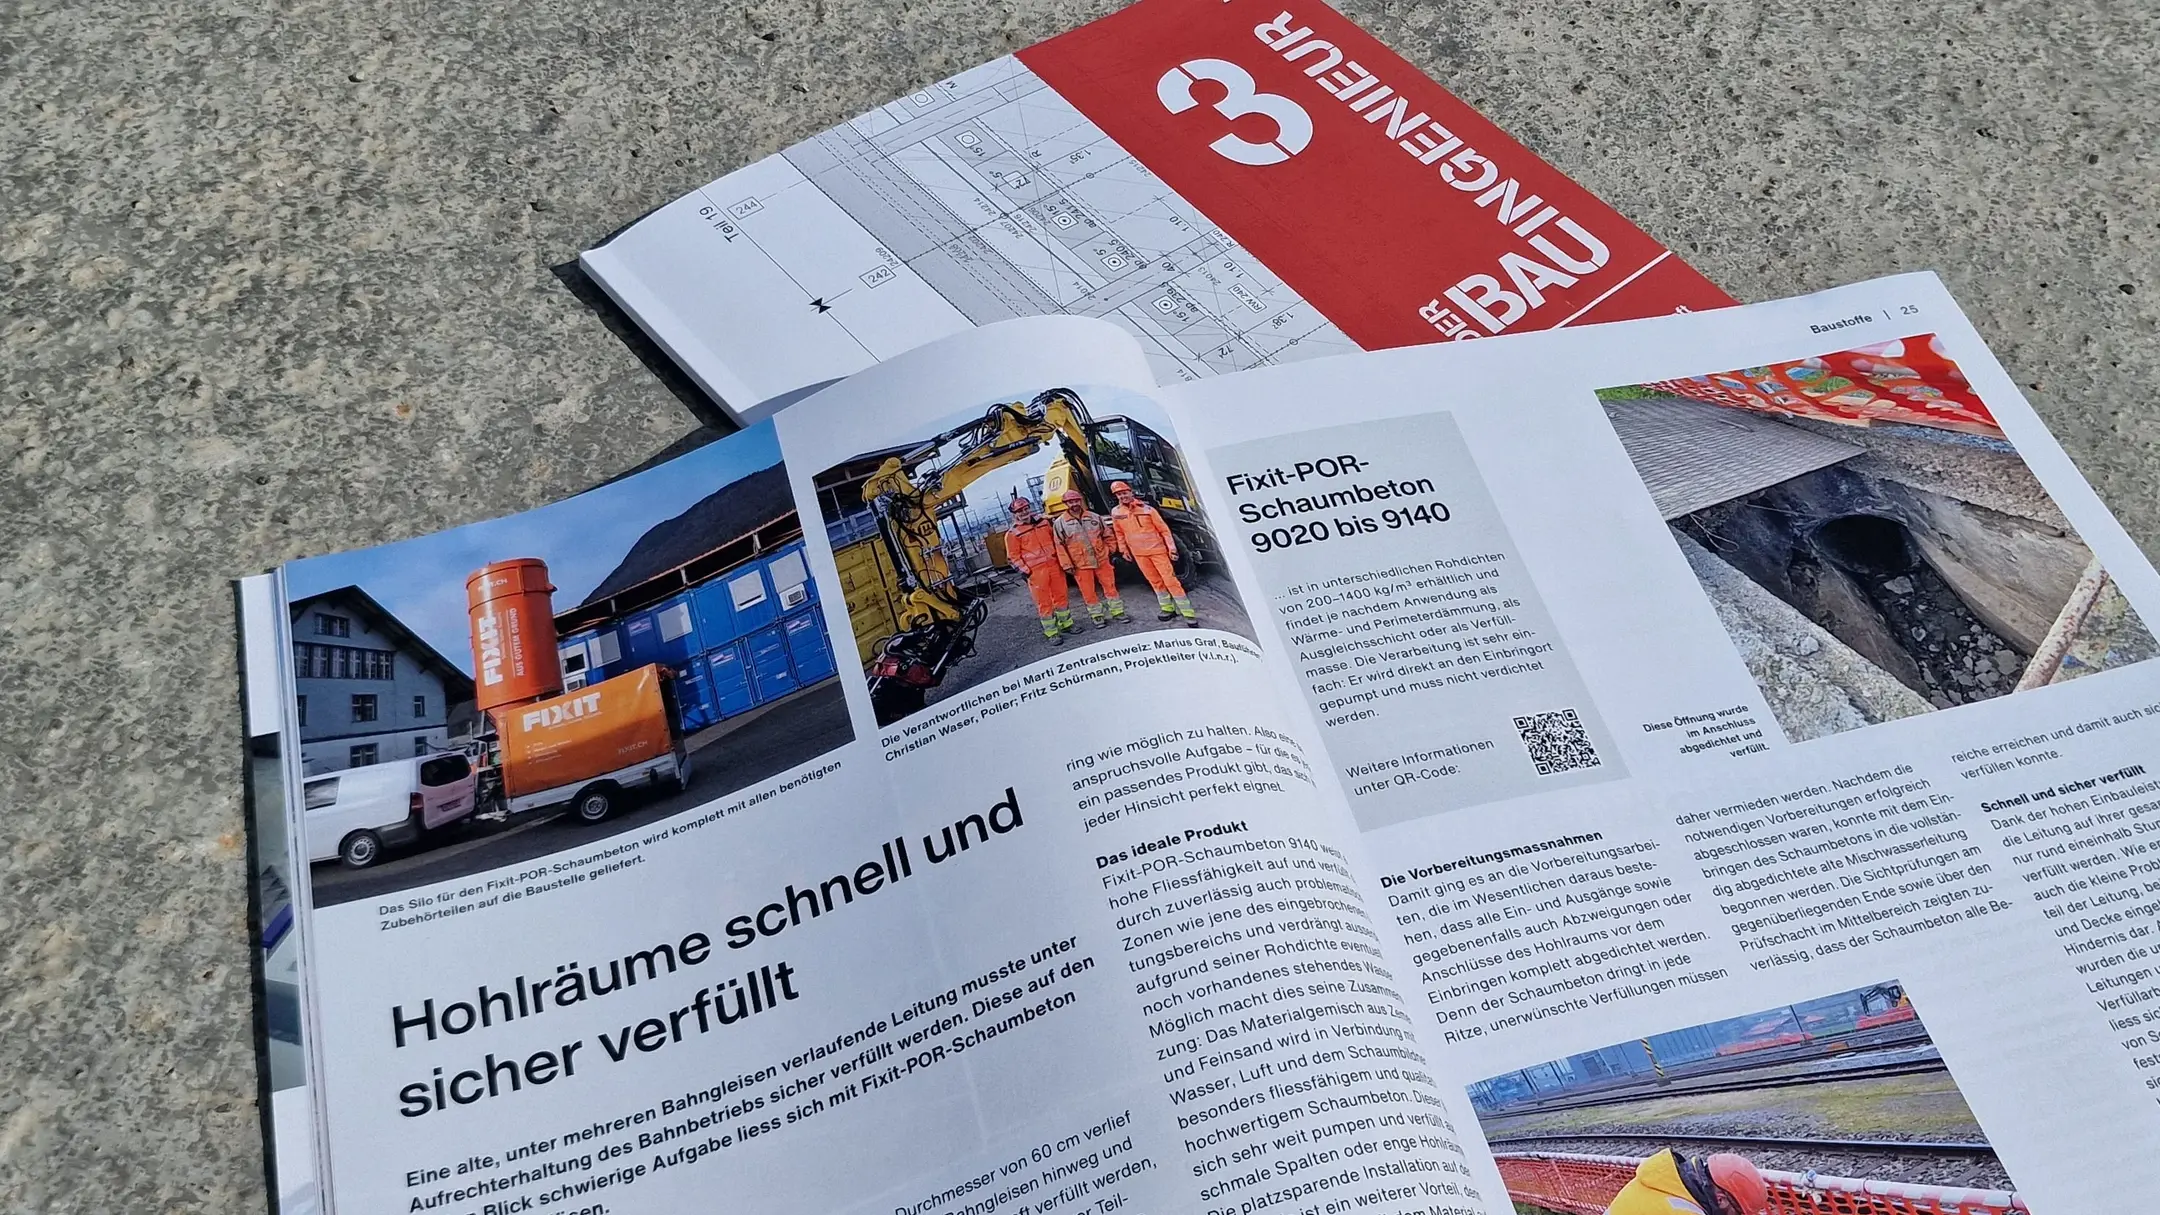 Titelblatt des Magazins "Der Bauingenieur" mit dem aufgeschlagenen Artikel zur Fixit POR Leitungsverfüllung am Bahnhof Schwyz